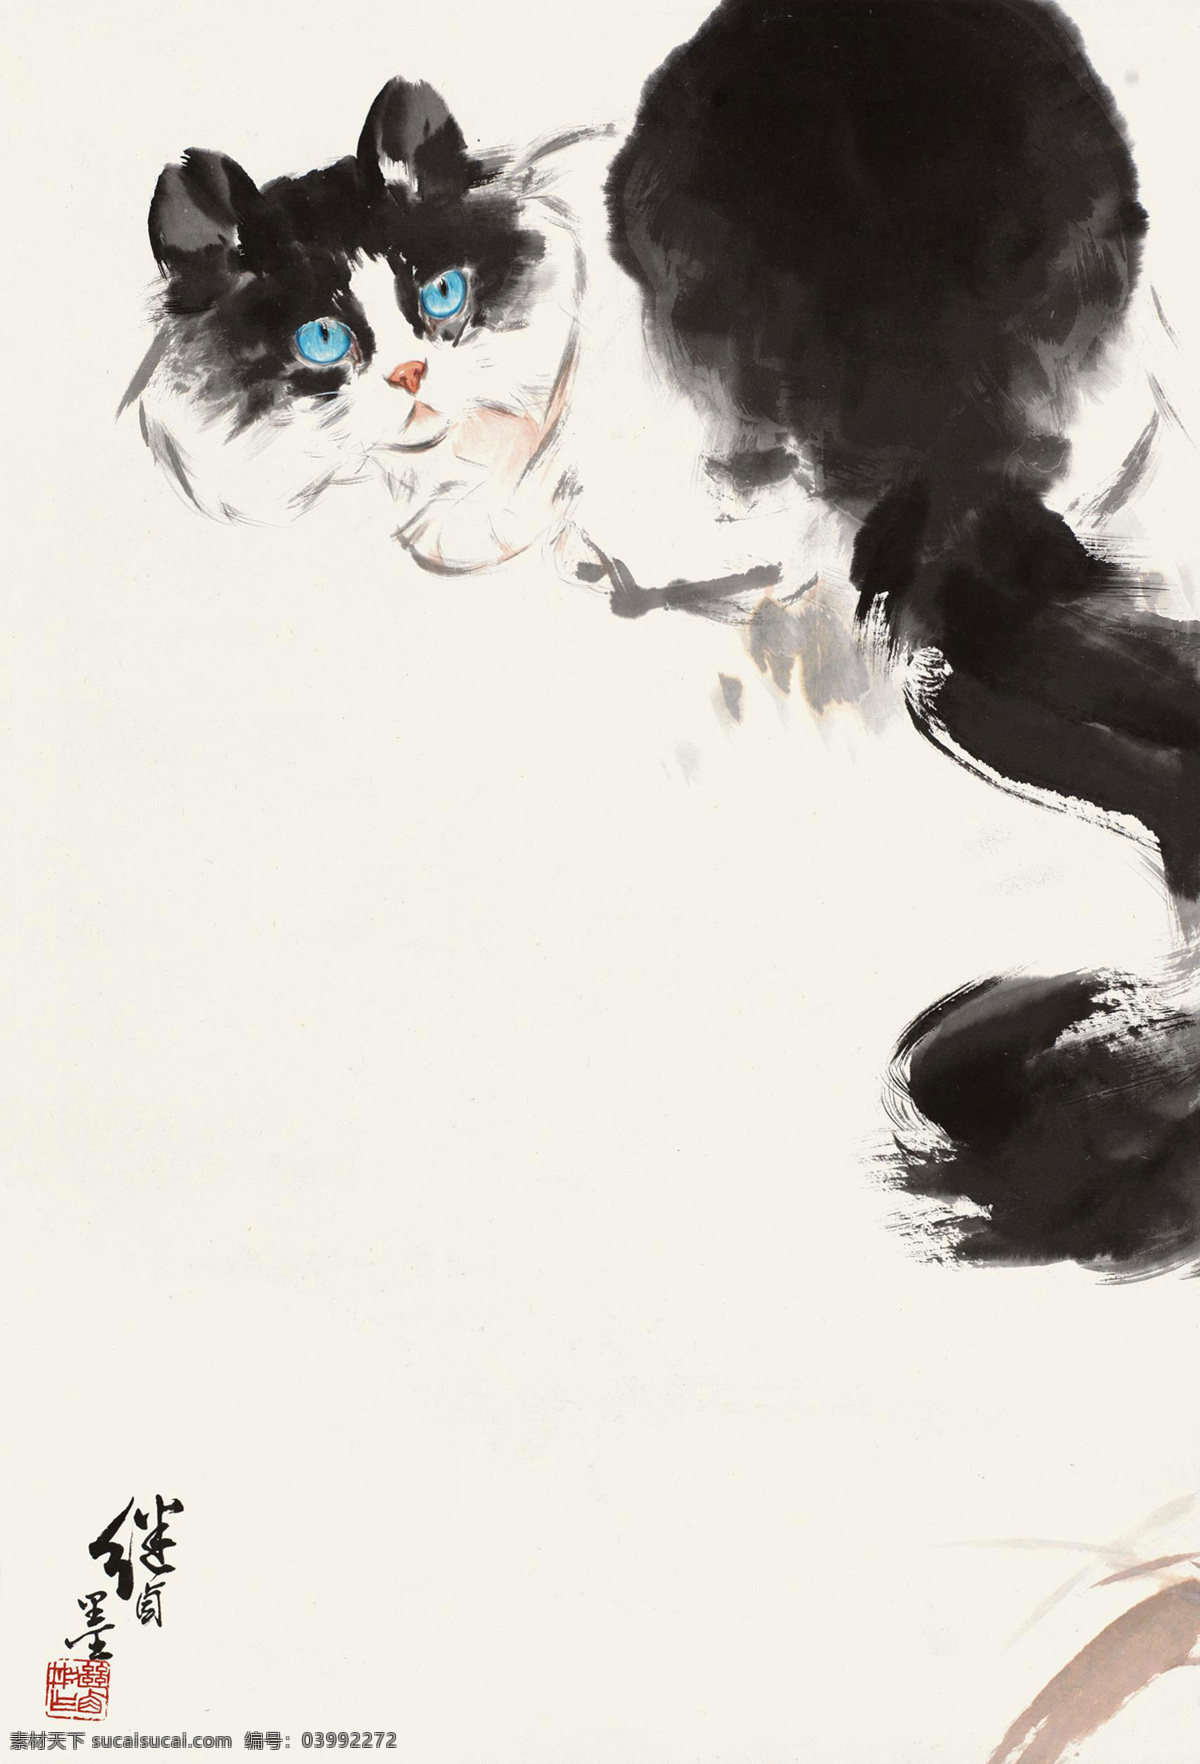 小猫 国画 绘画书法 猫咪 水墨画 文化艺术 中国画 小猫设计素材 小猫模板下载 刘继卣